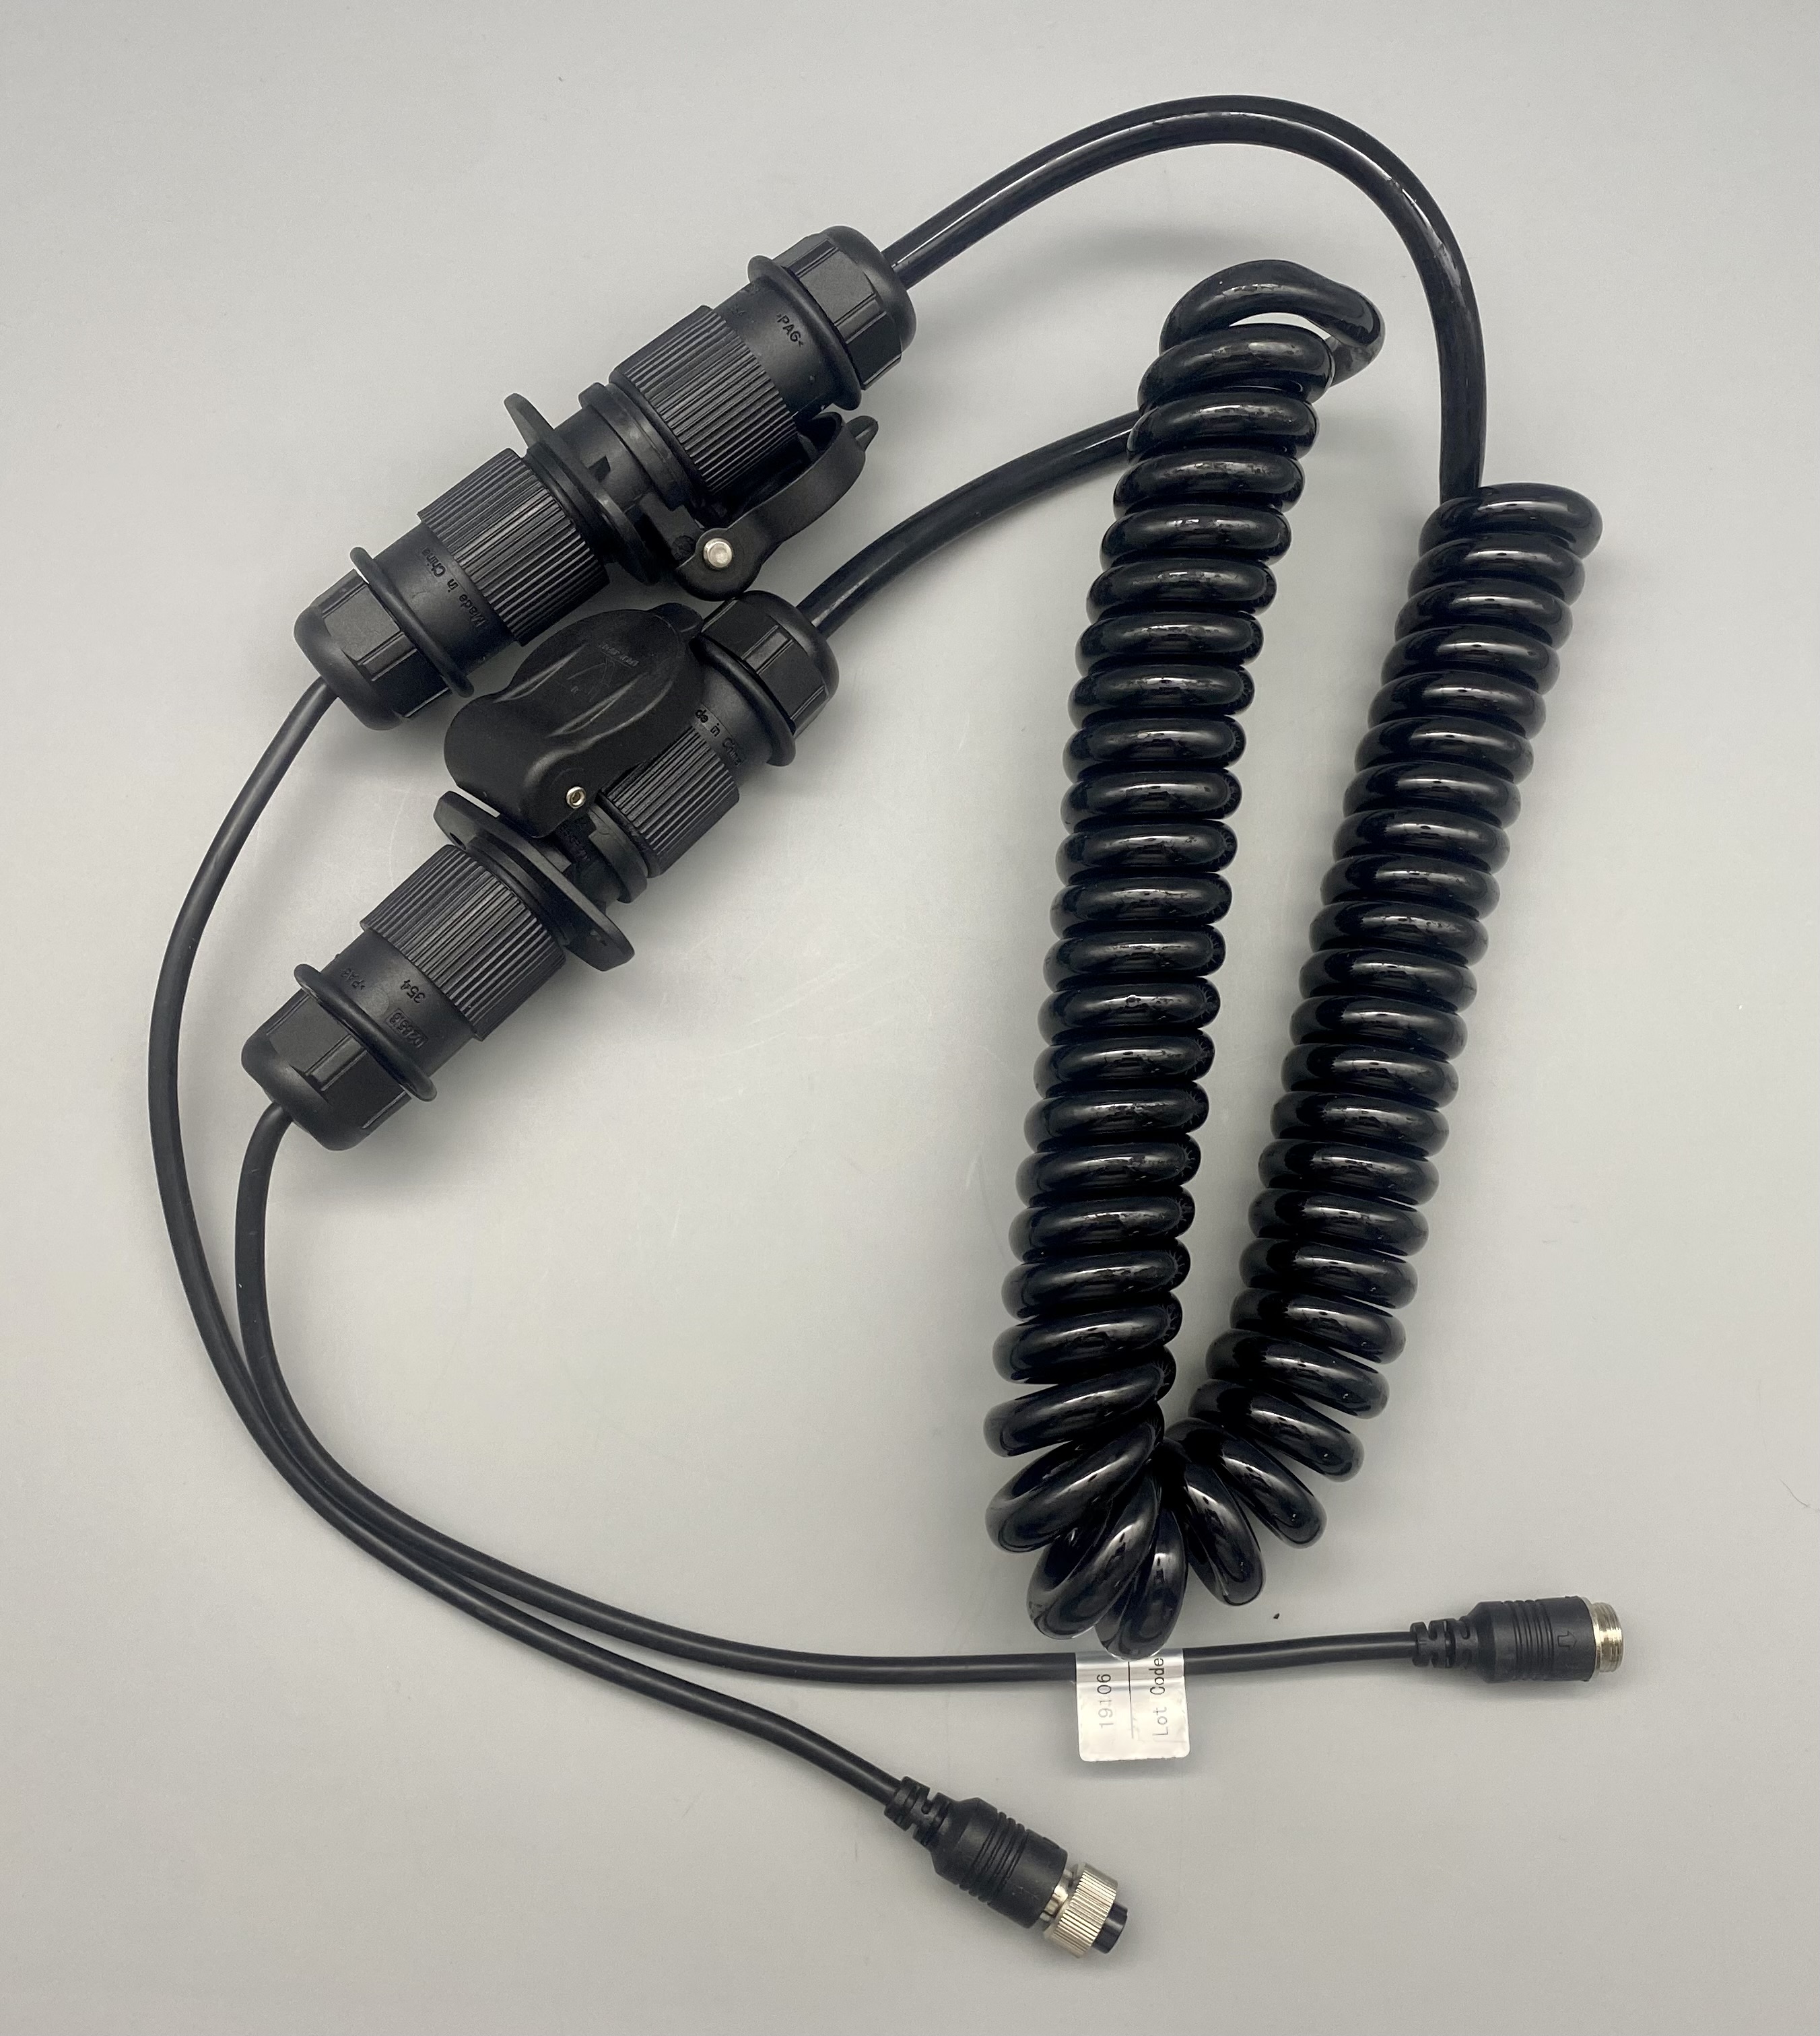 Trailer-Disconnect kit for Magnadyne Backup cameras